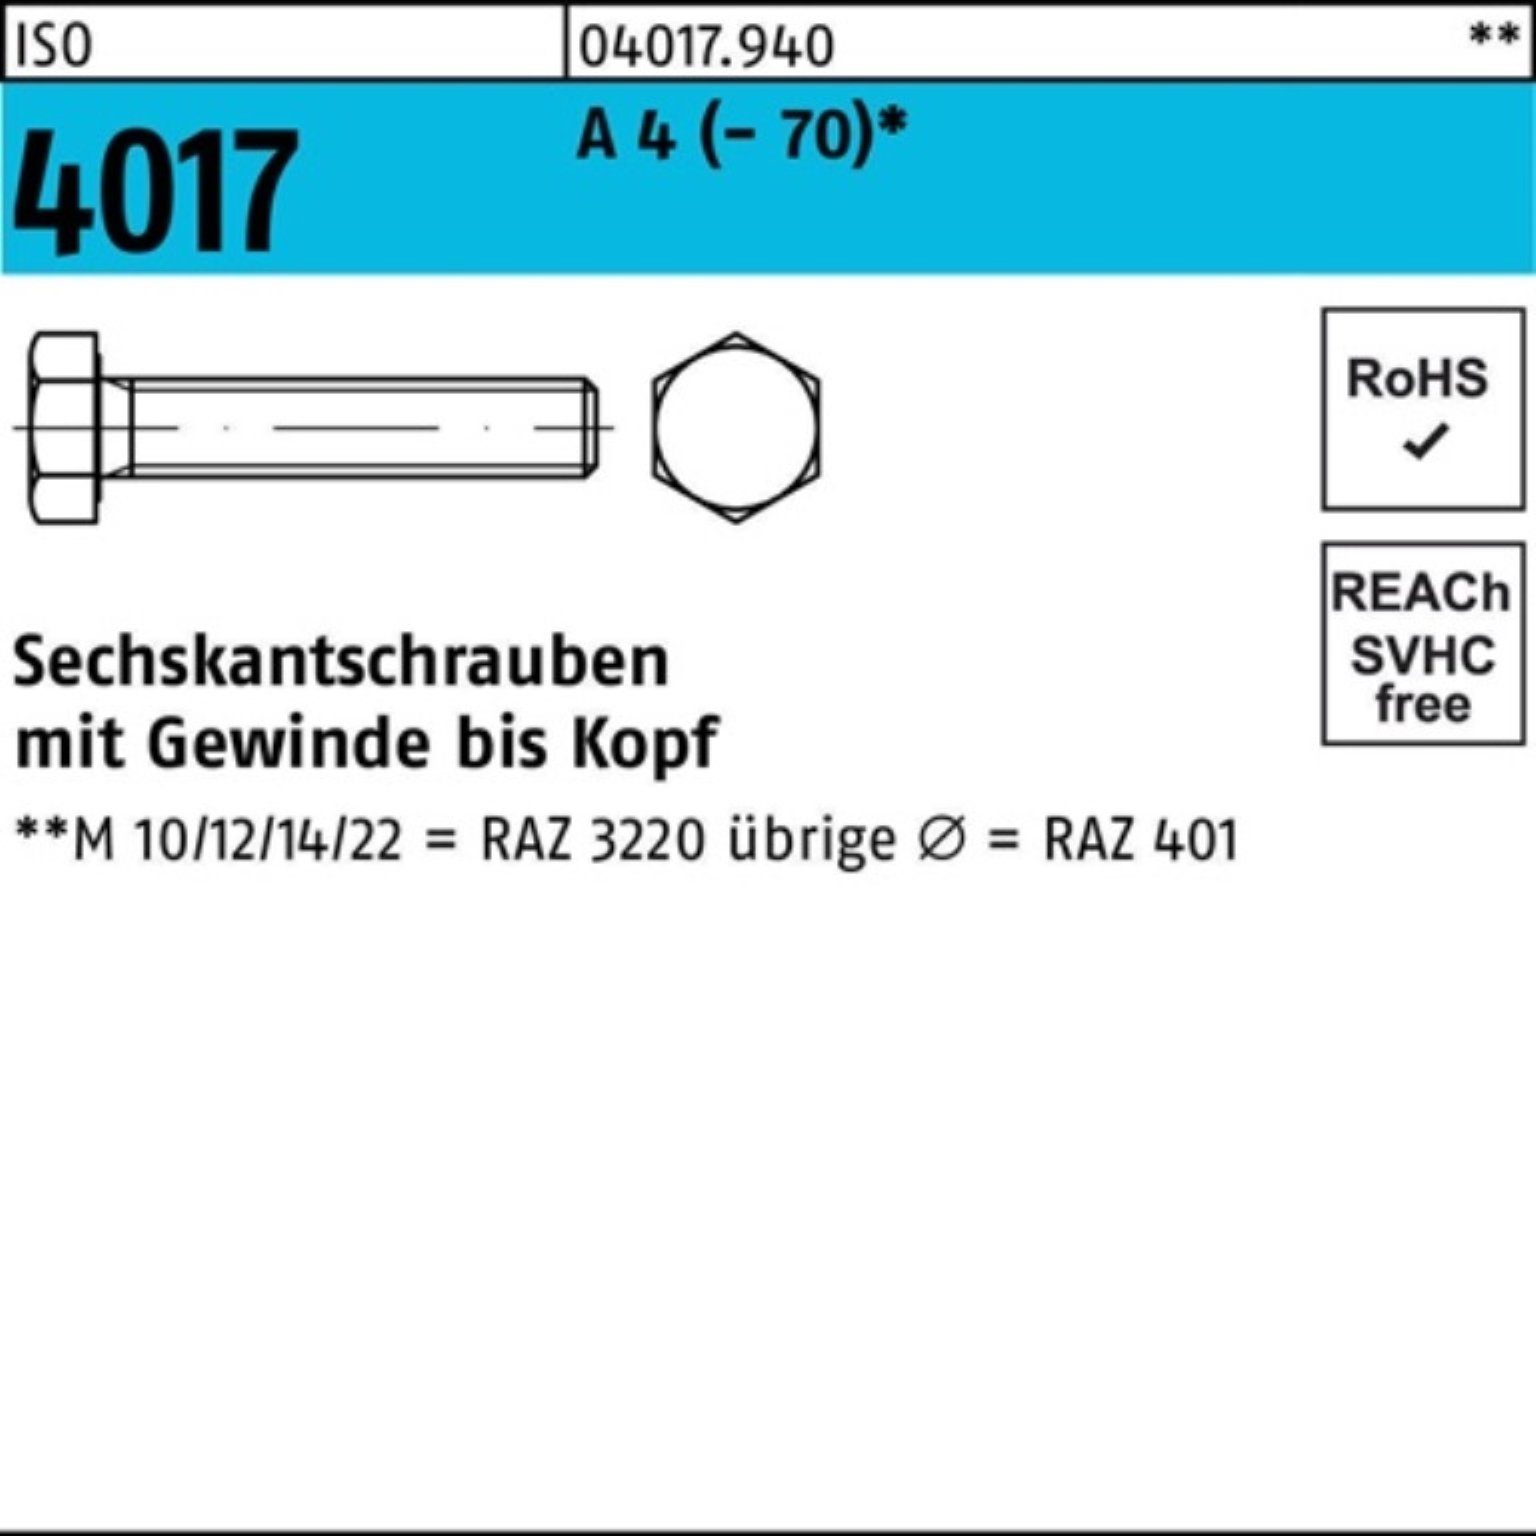 Bufab Sechskantschraube 100er Pack Sechskantschraube ISO 4017 VG M5x 16 A 4 (70) 100 Stück